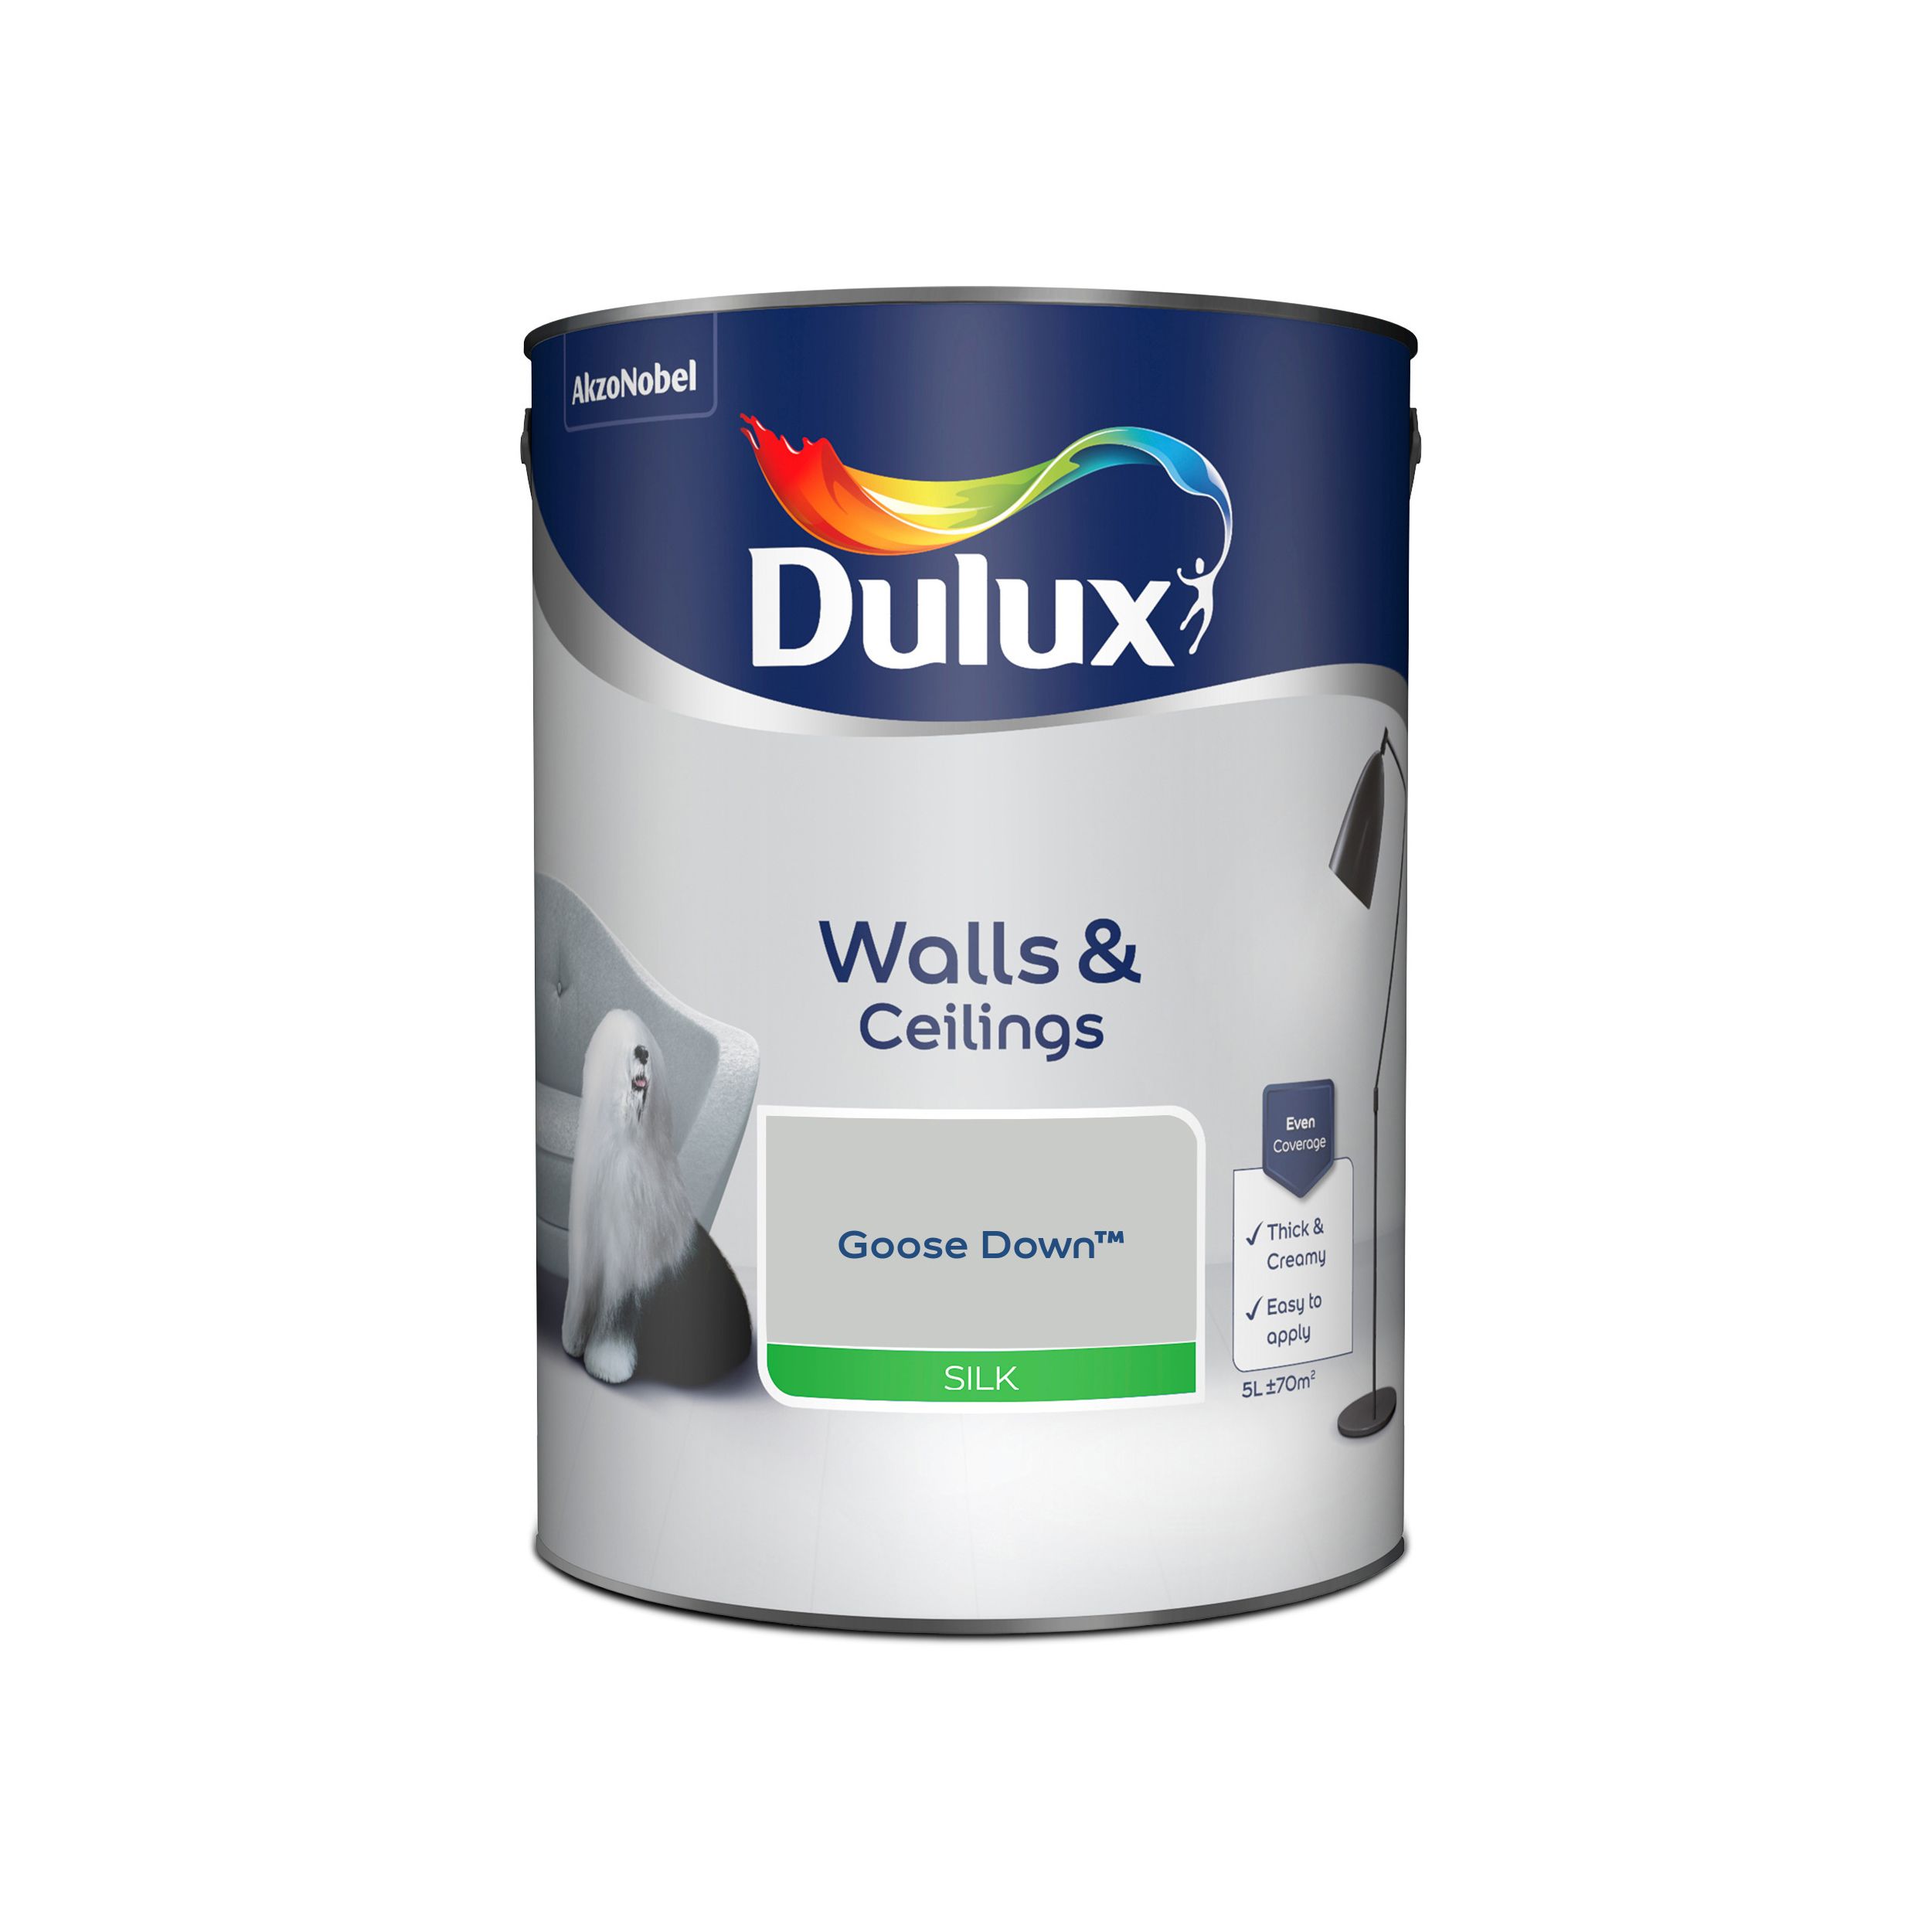 Dulux Walls & ceilings Goose down Silk Emulsion paint, 5L